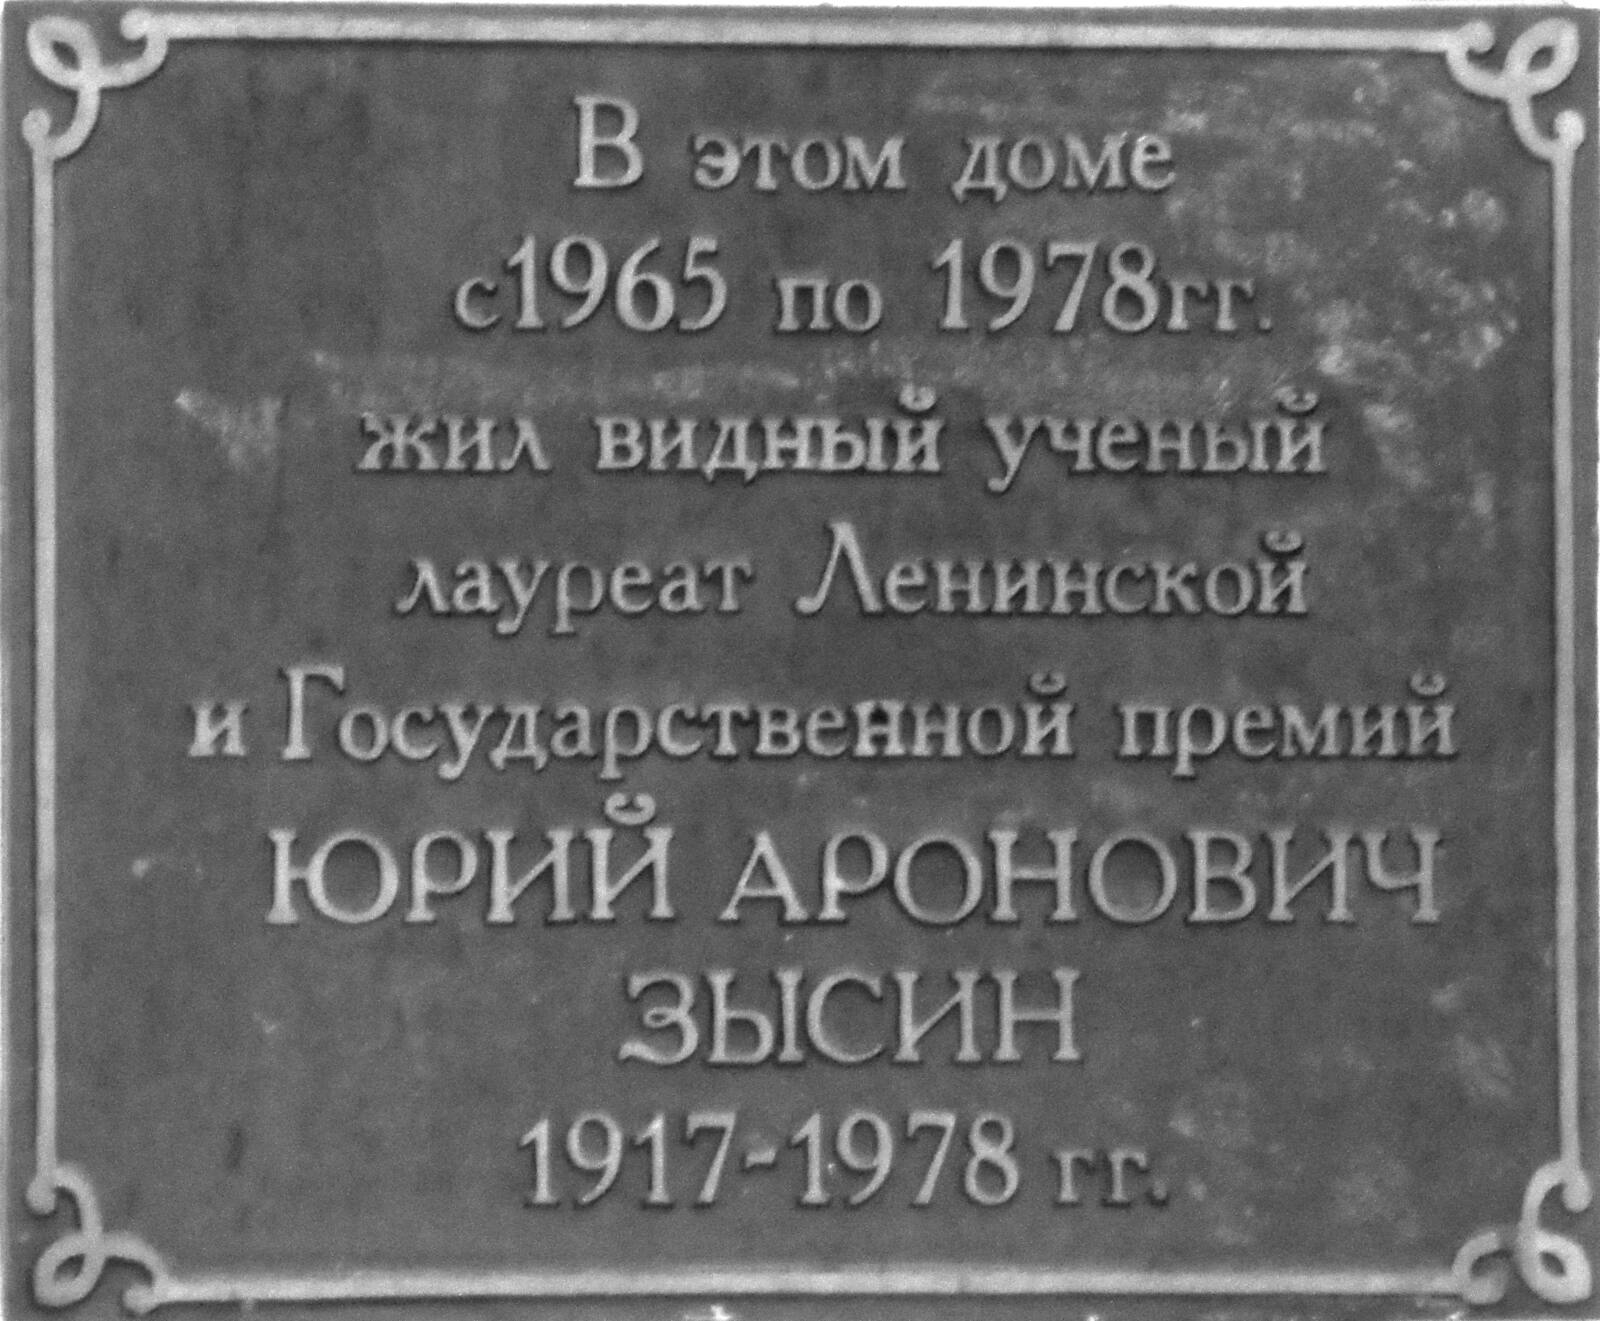 Мемориальная доска,посвящённая Ю.А. Зысину. Снежинск